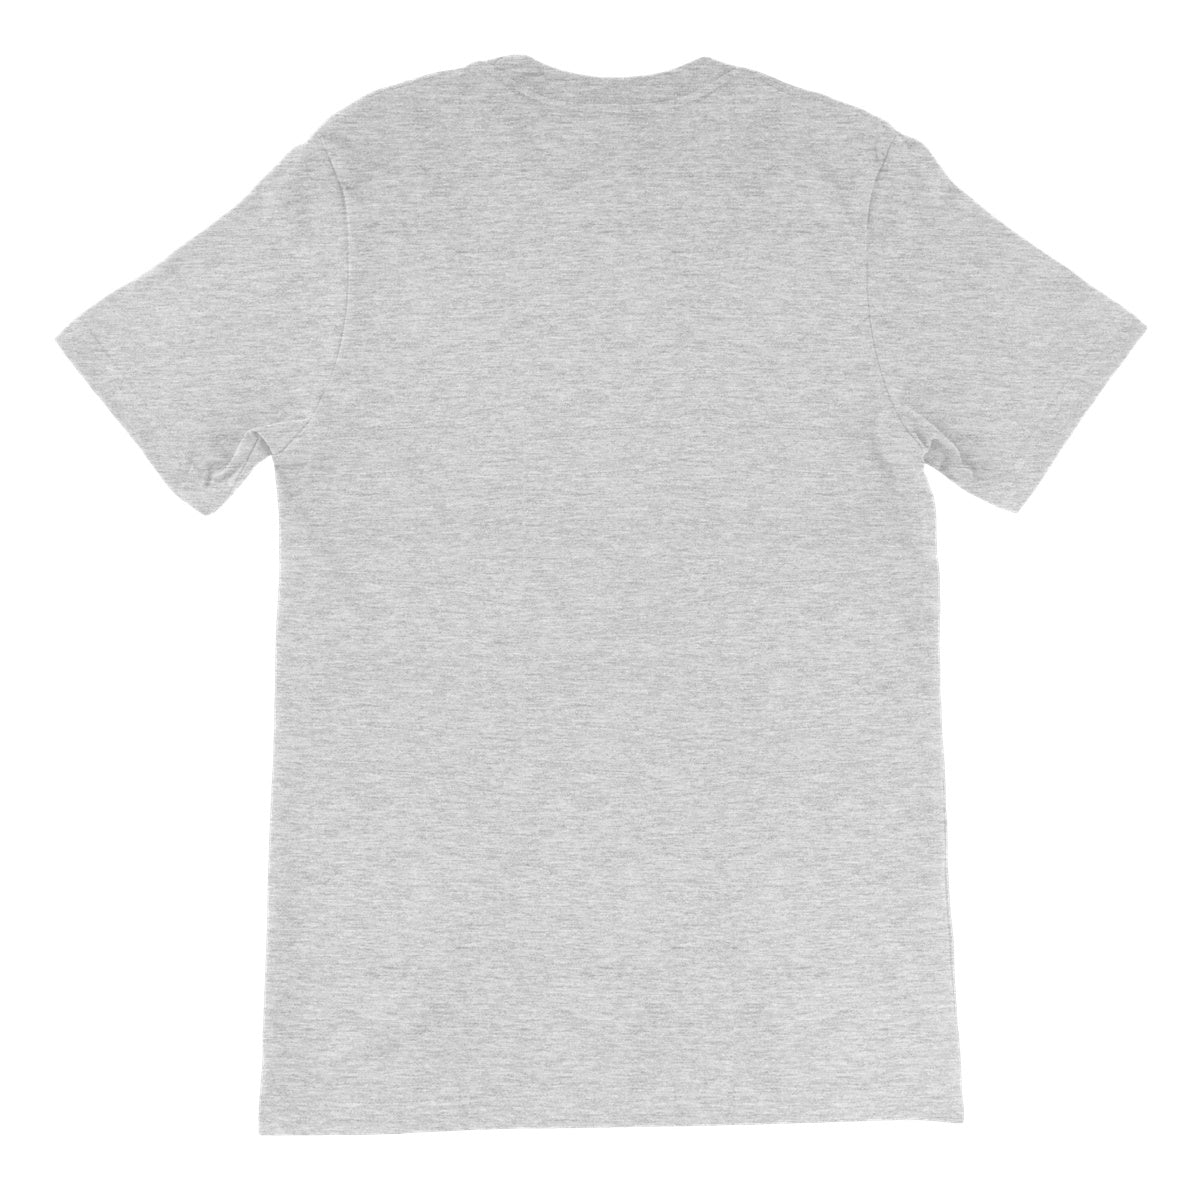 BOB DYLAN - POP ART Unisex Short Sleeve T-Shirt